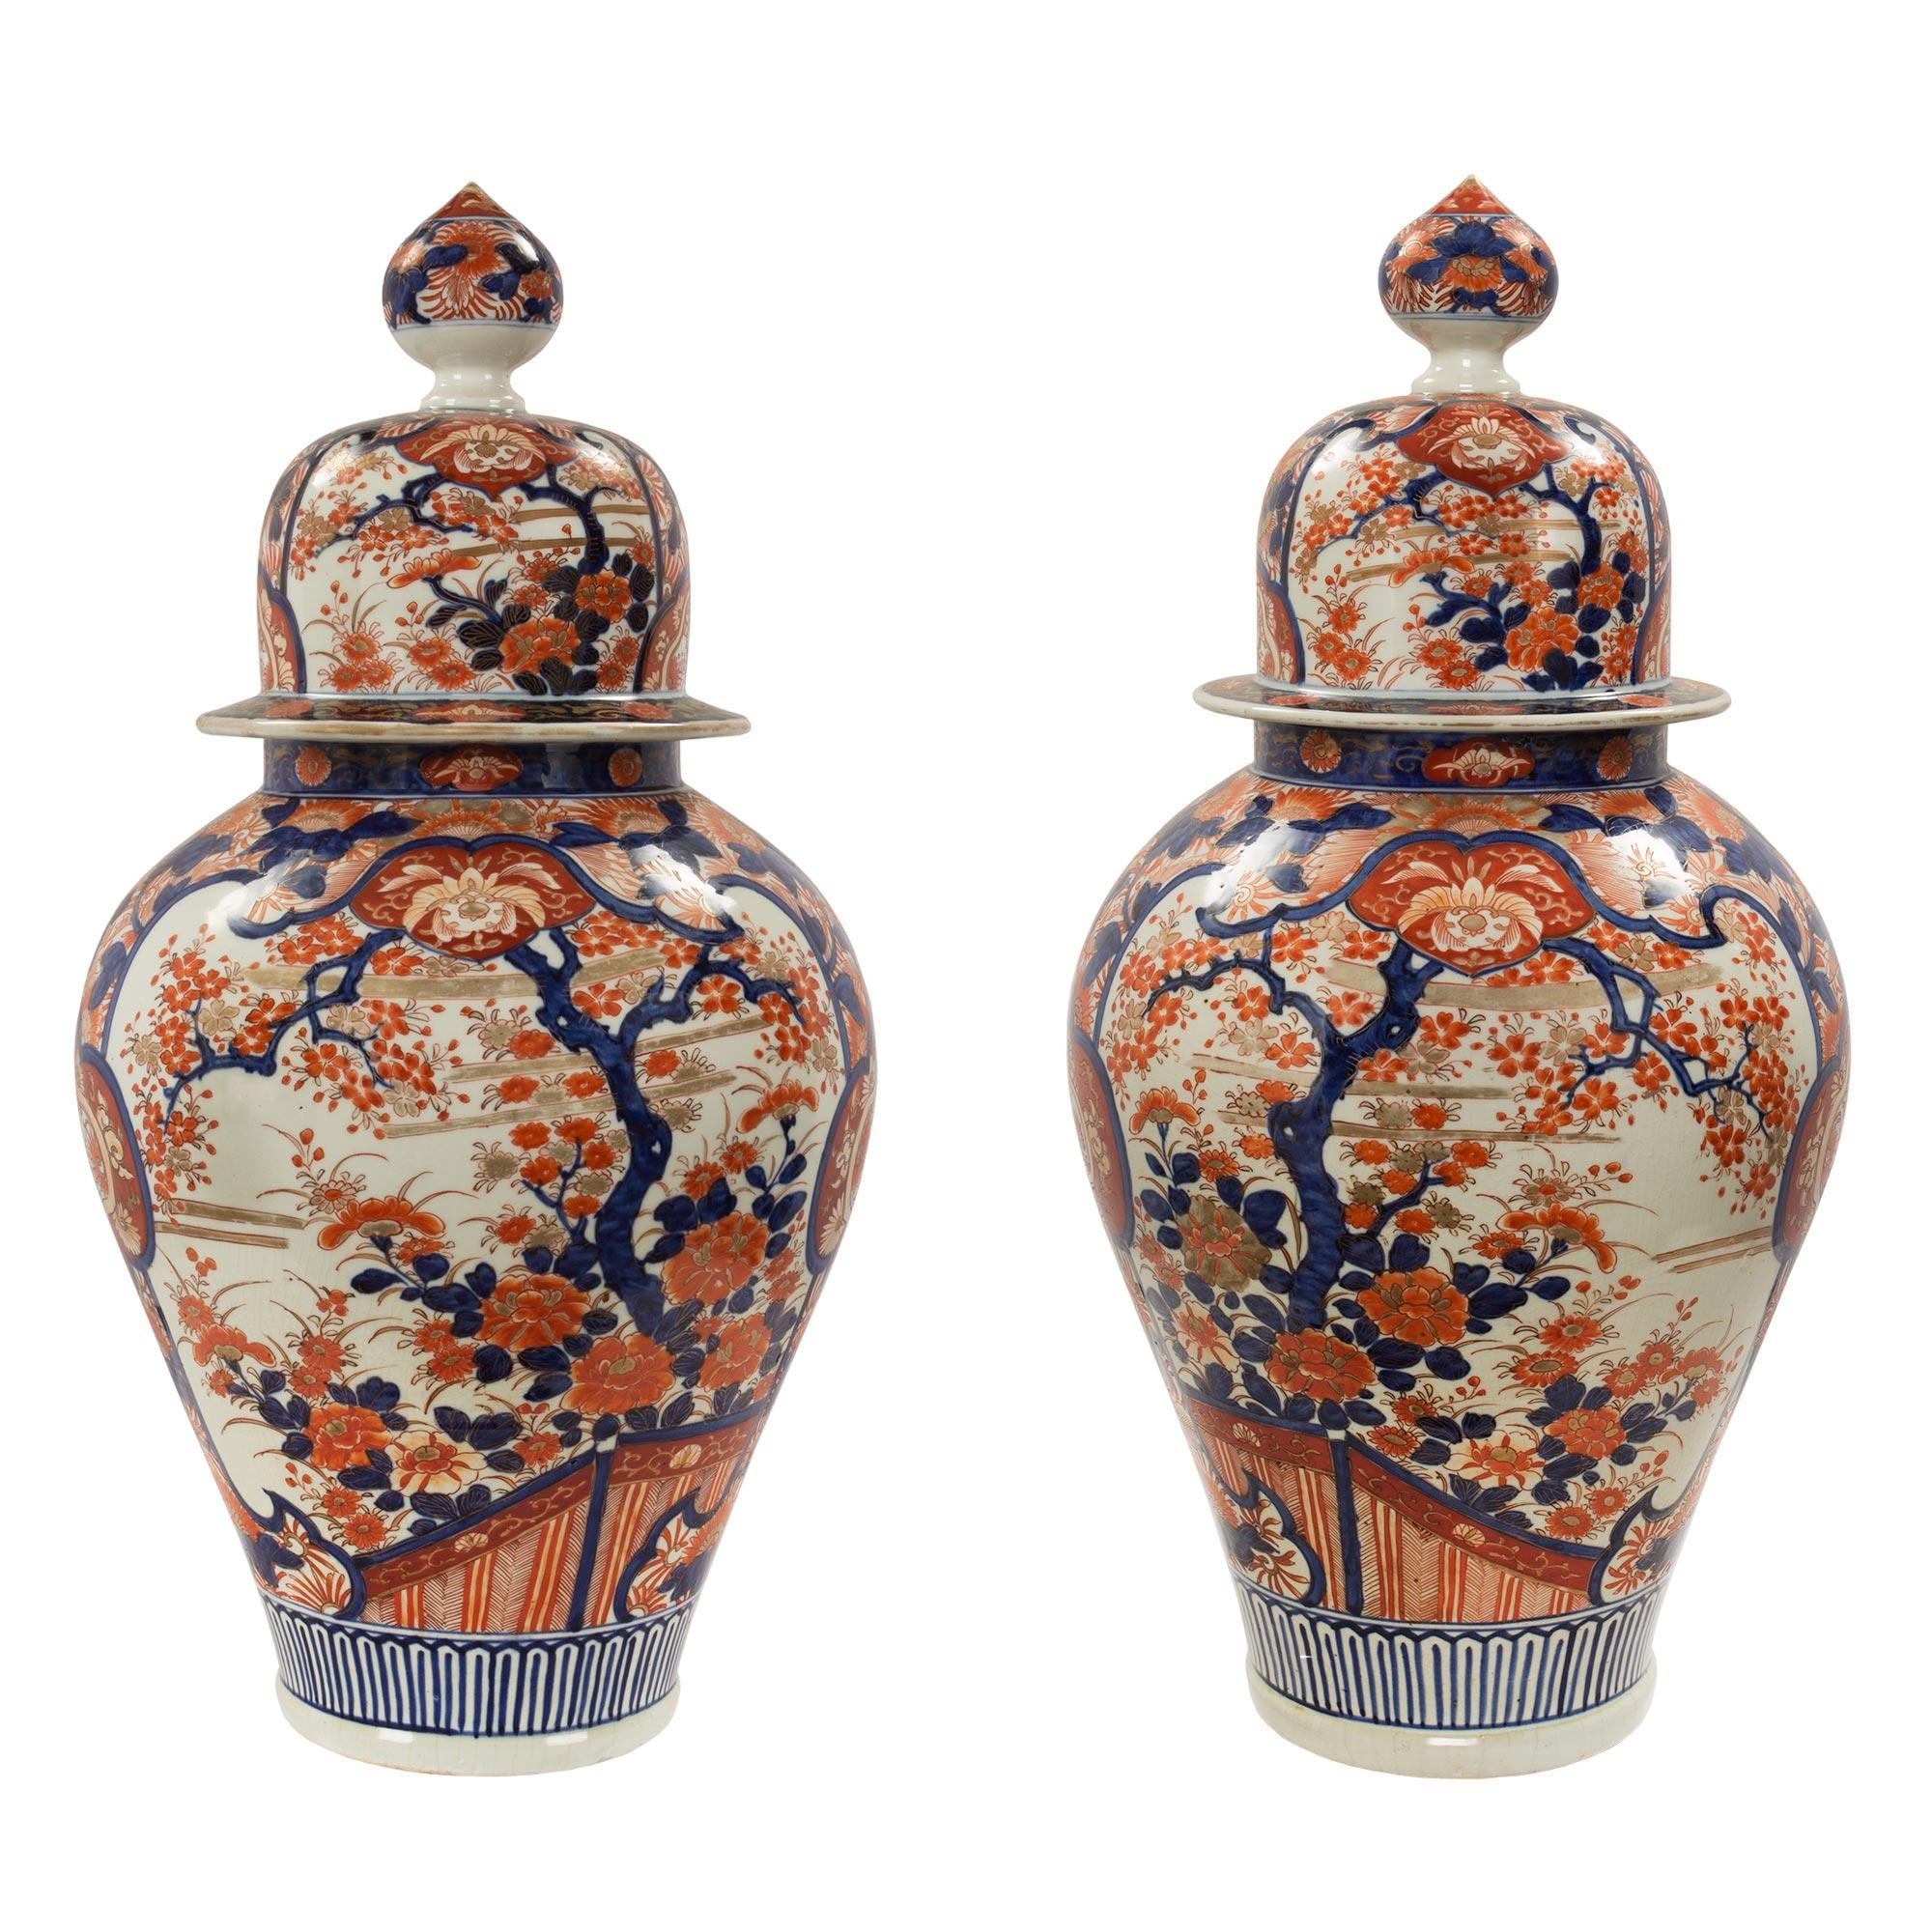 Ein Paar schöne und großformatige japanische Imari-Deckelurnen aus dem 19. Jede Urne zeigt die elegantesten traditionellen floralen handgemalten Designs mit fein detaillierten und sehr charmanten Szenen. Oben befindet sich der abnehmbare Deckel mit